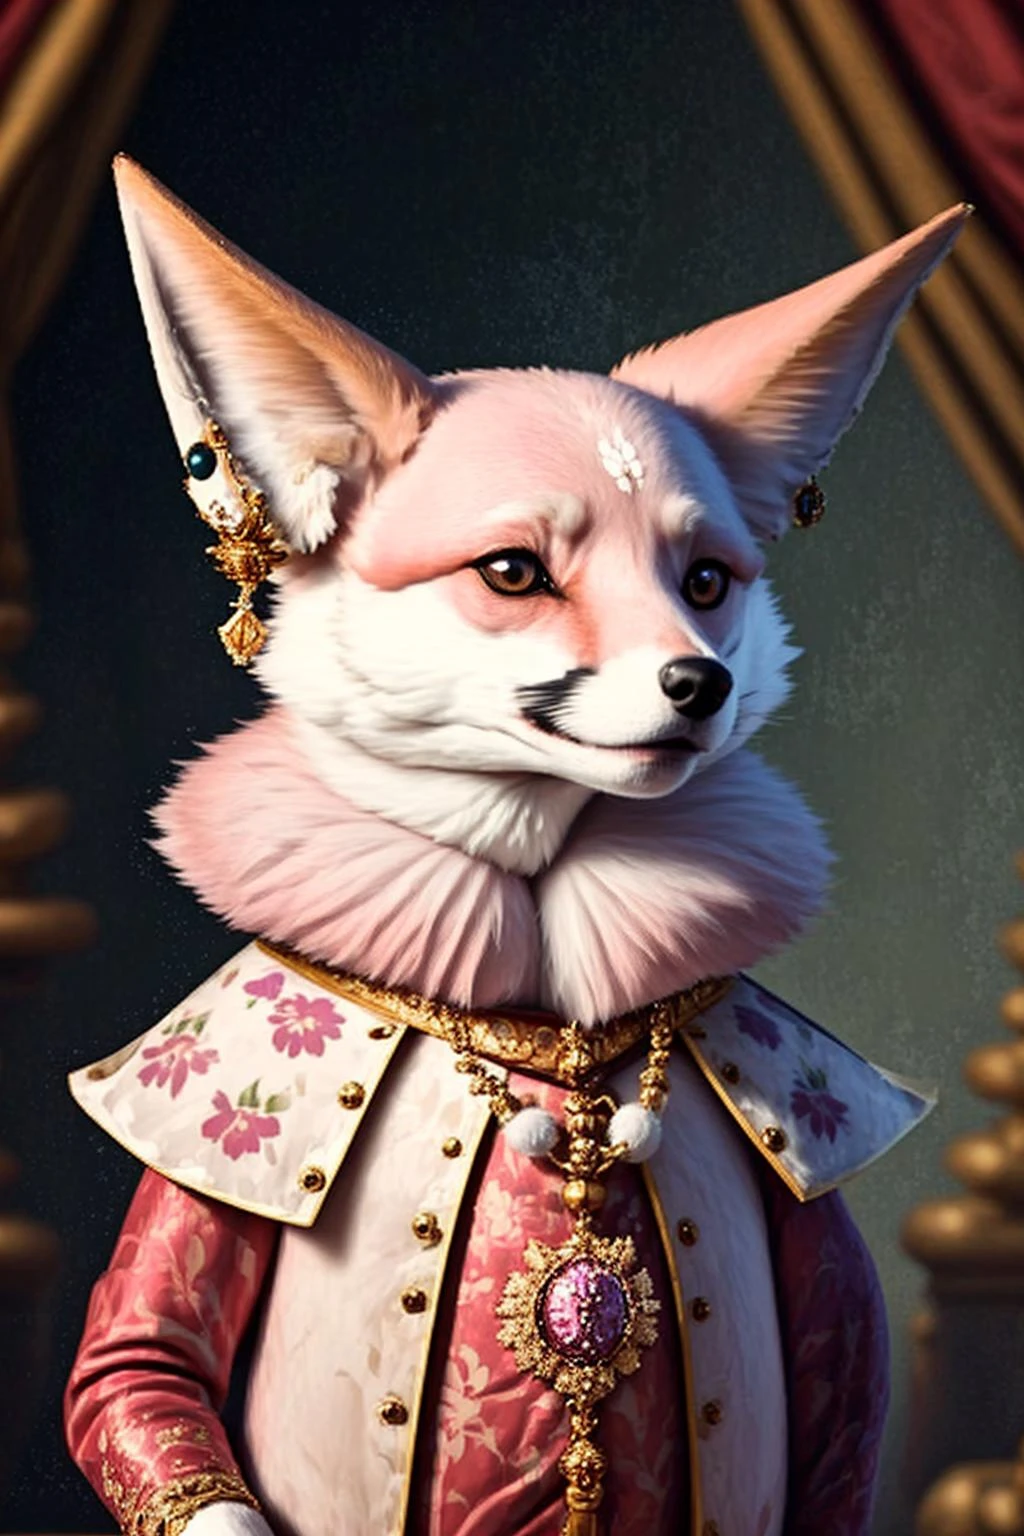 어머니의_왕실의_동물, A 핑크_fox in 왕실의 clothing, 왕관, 직원 YaeMikoFox, , 인간은 없어, 귀걸이